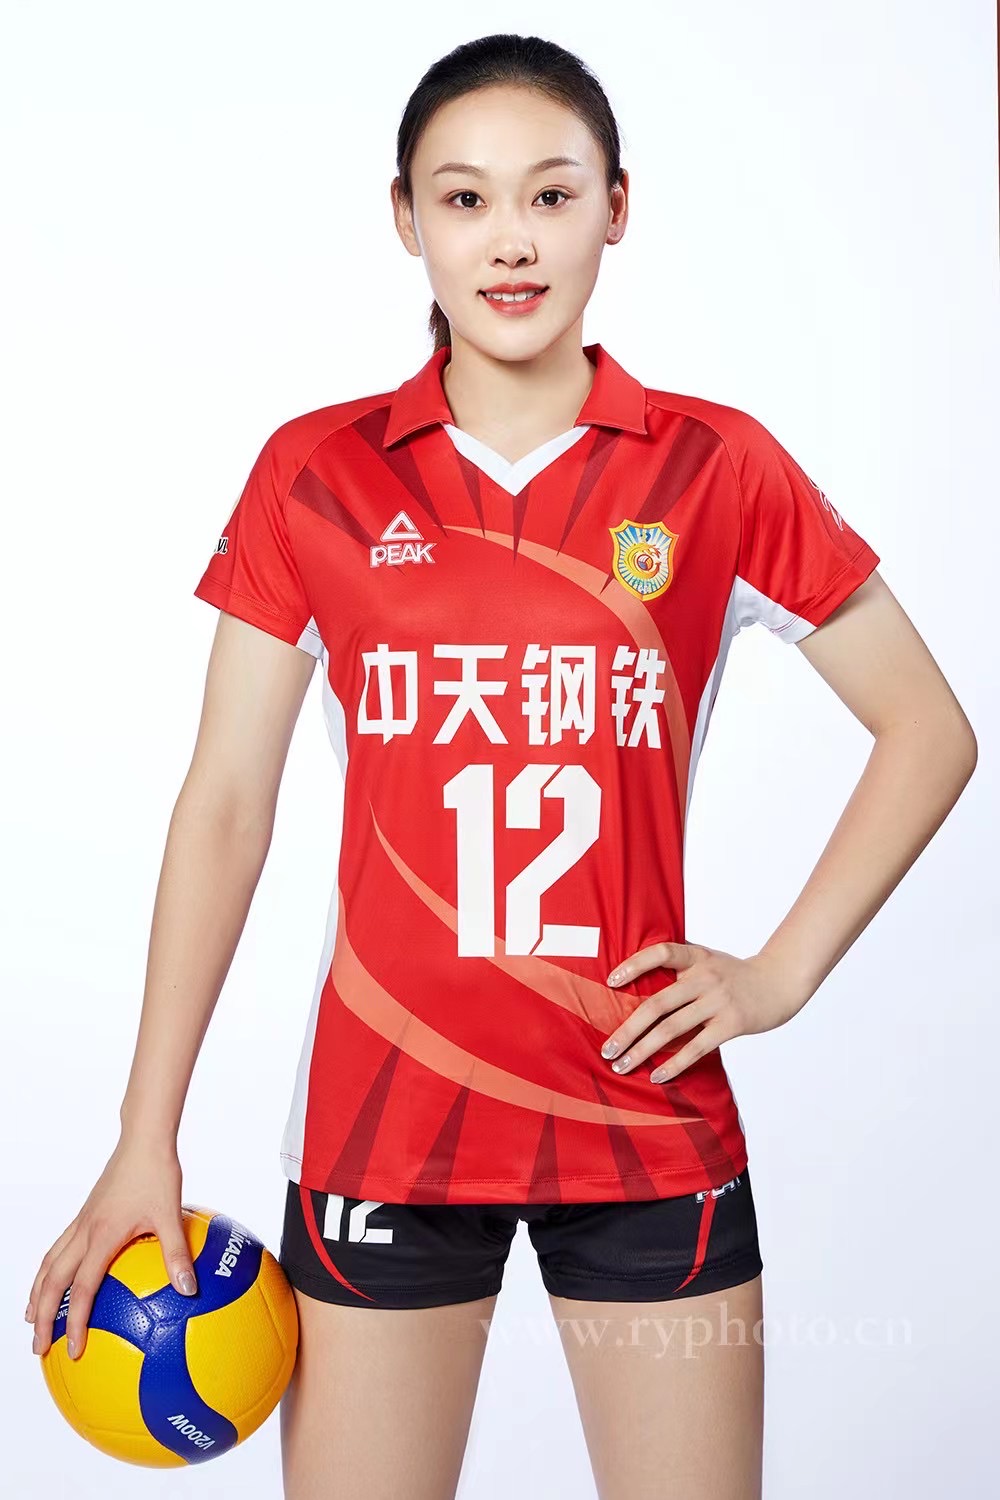 江苏女排定妆照-体育运动员形象照宣传照广告宣传图片 中国女排国家队(图6)